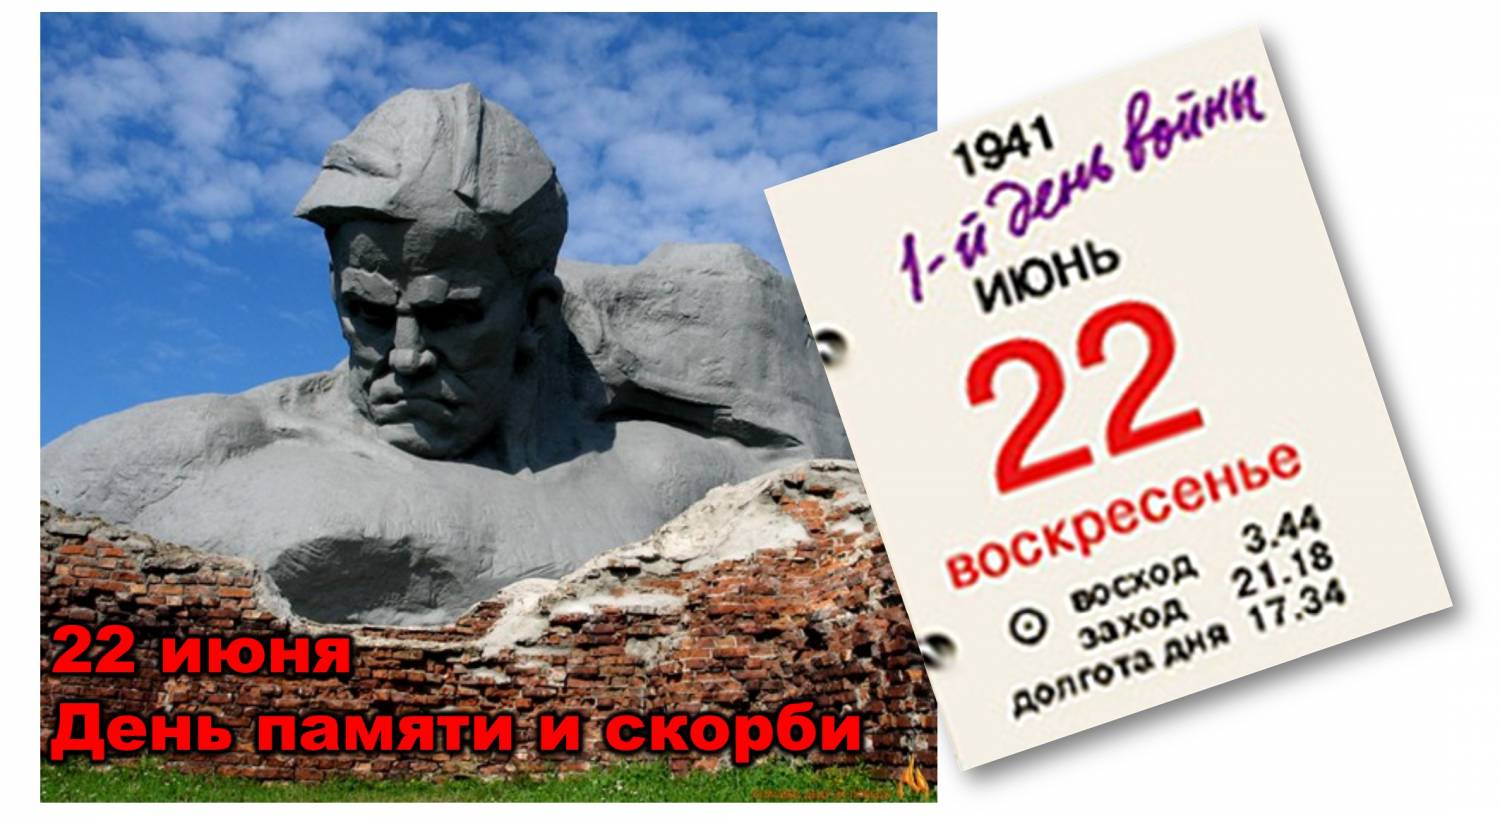 22 июня День памяти и скорби — день начала Великой Отечественной войны (1941 год) Обращениие